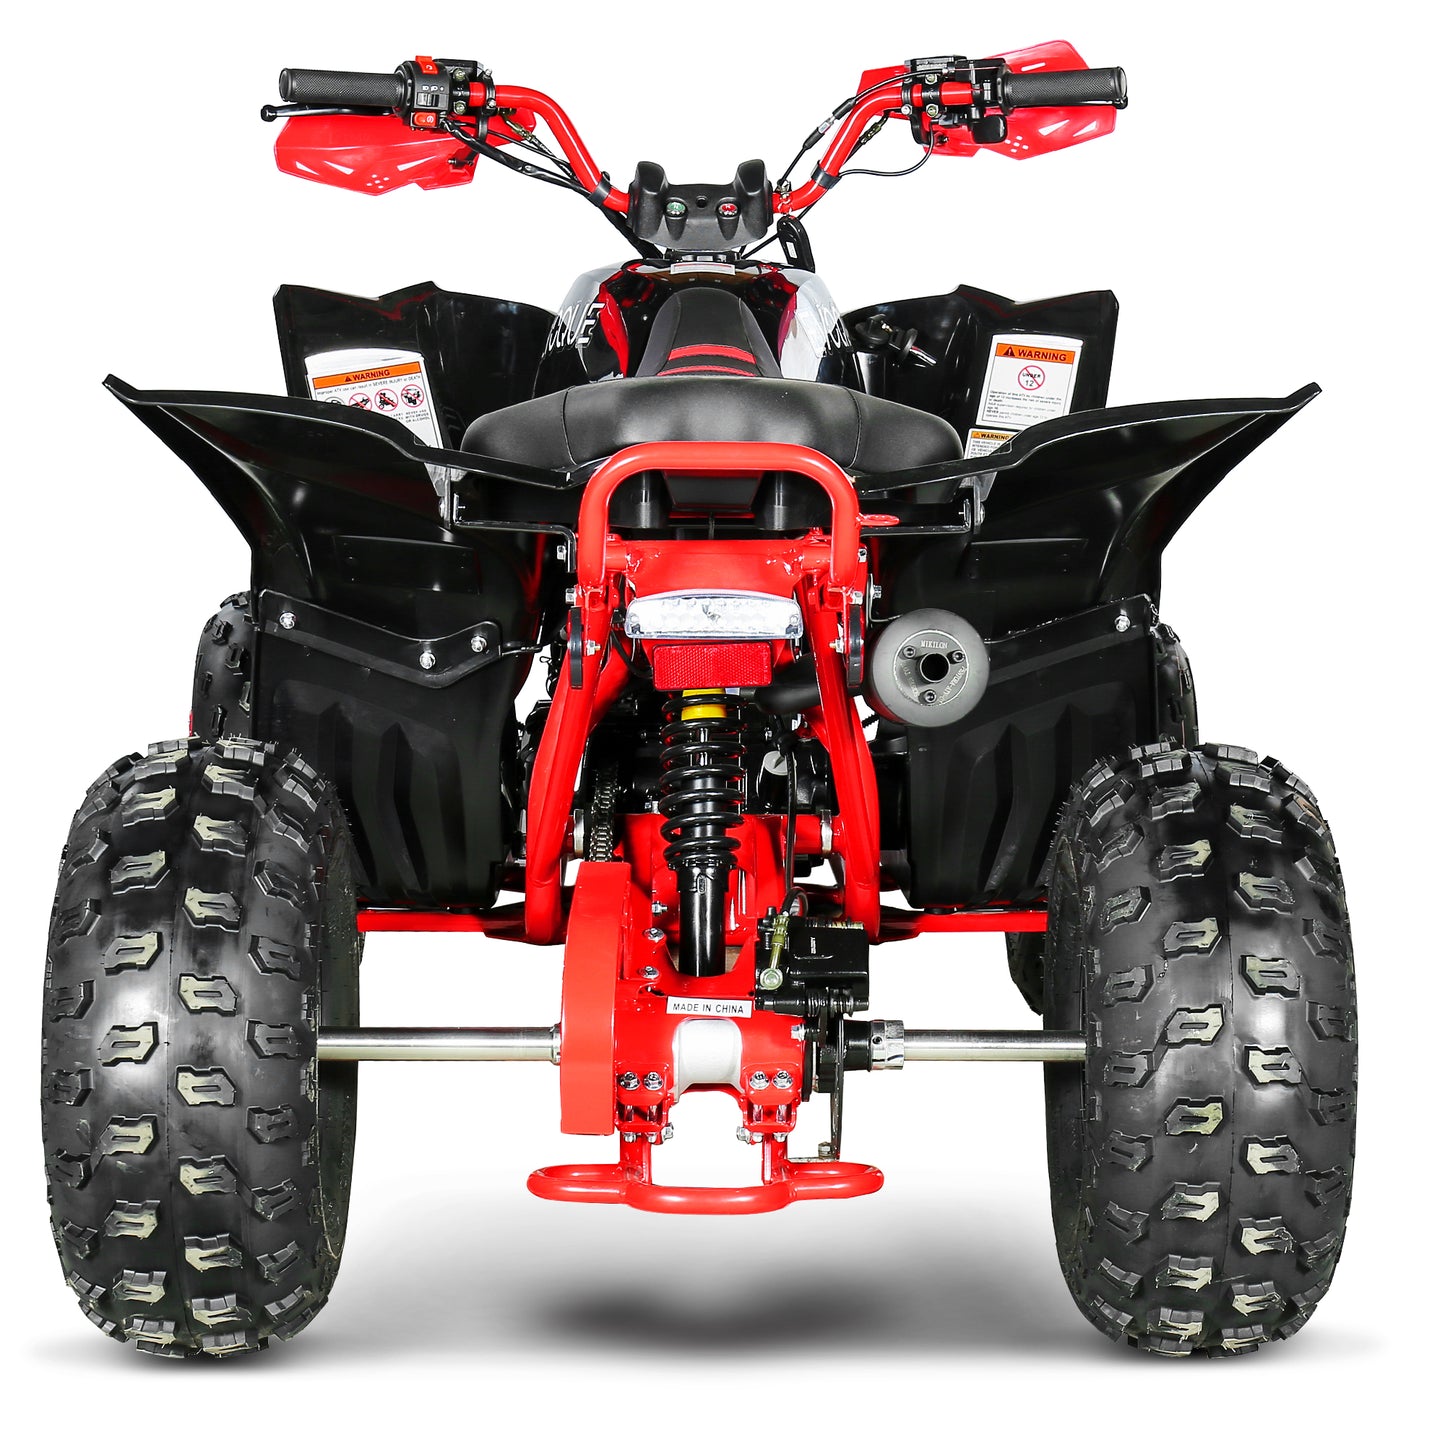 VQS-125XR ATV